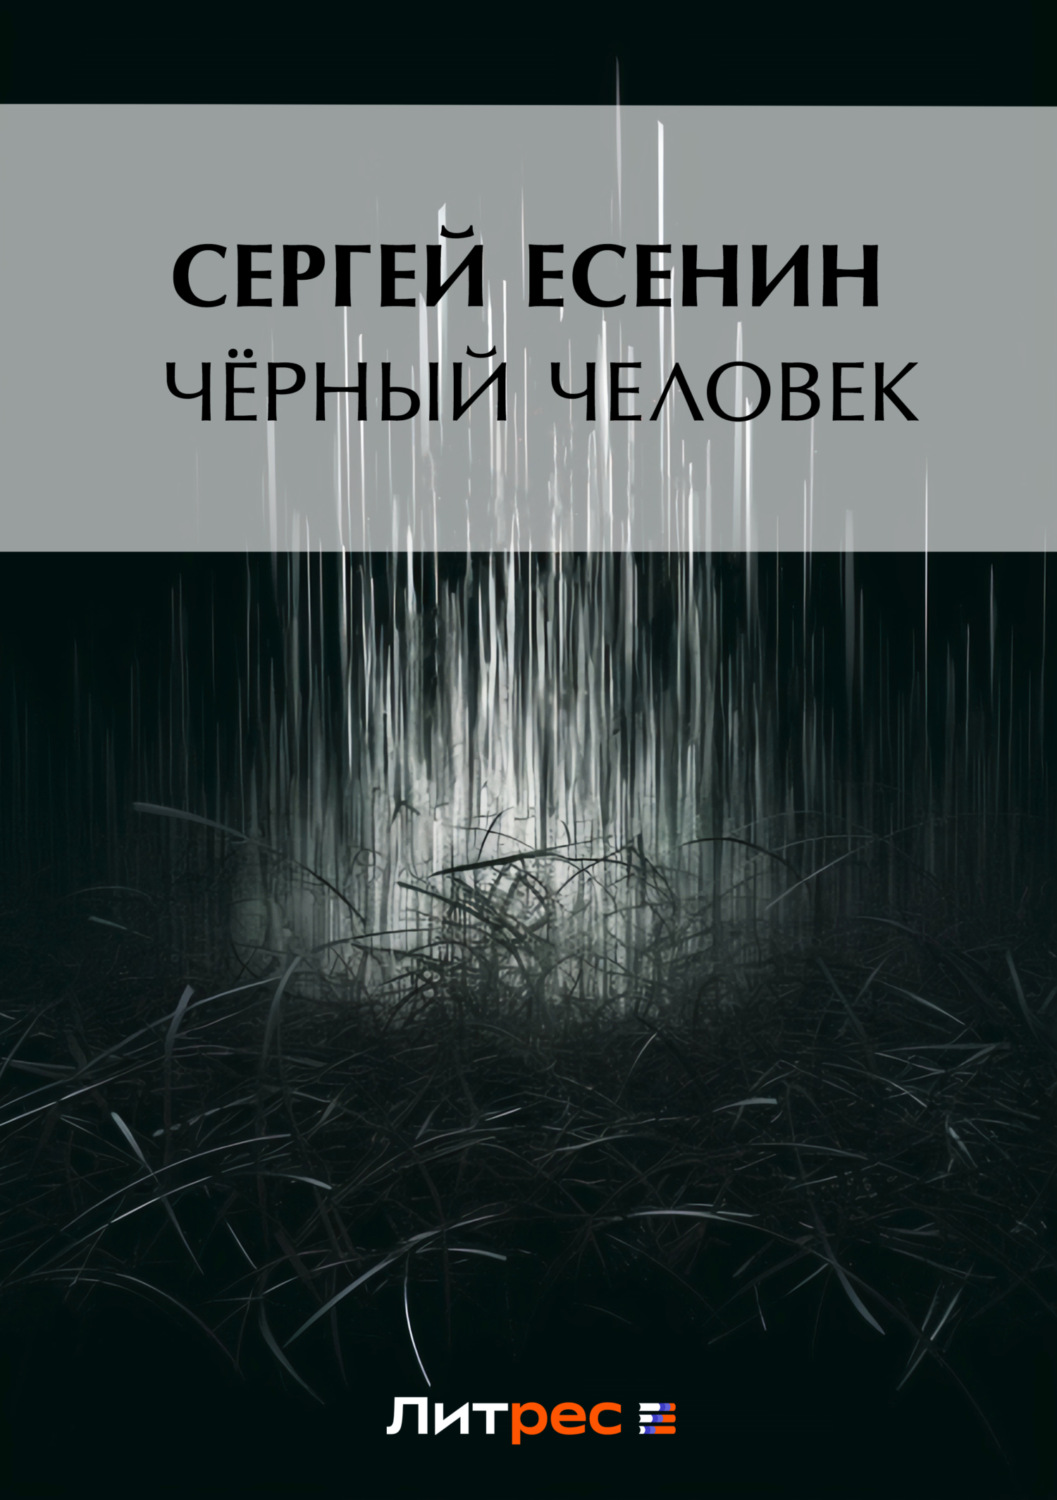 Цитаты из книги «Черный человек» Сергея Есенина – Литрес